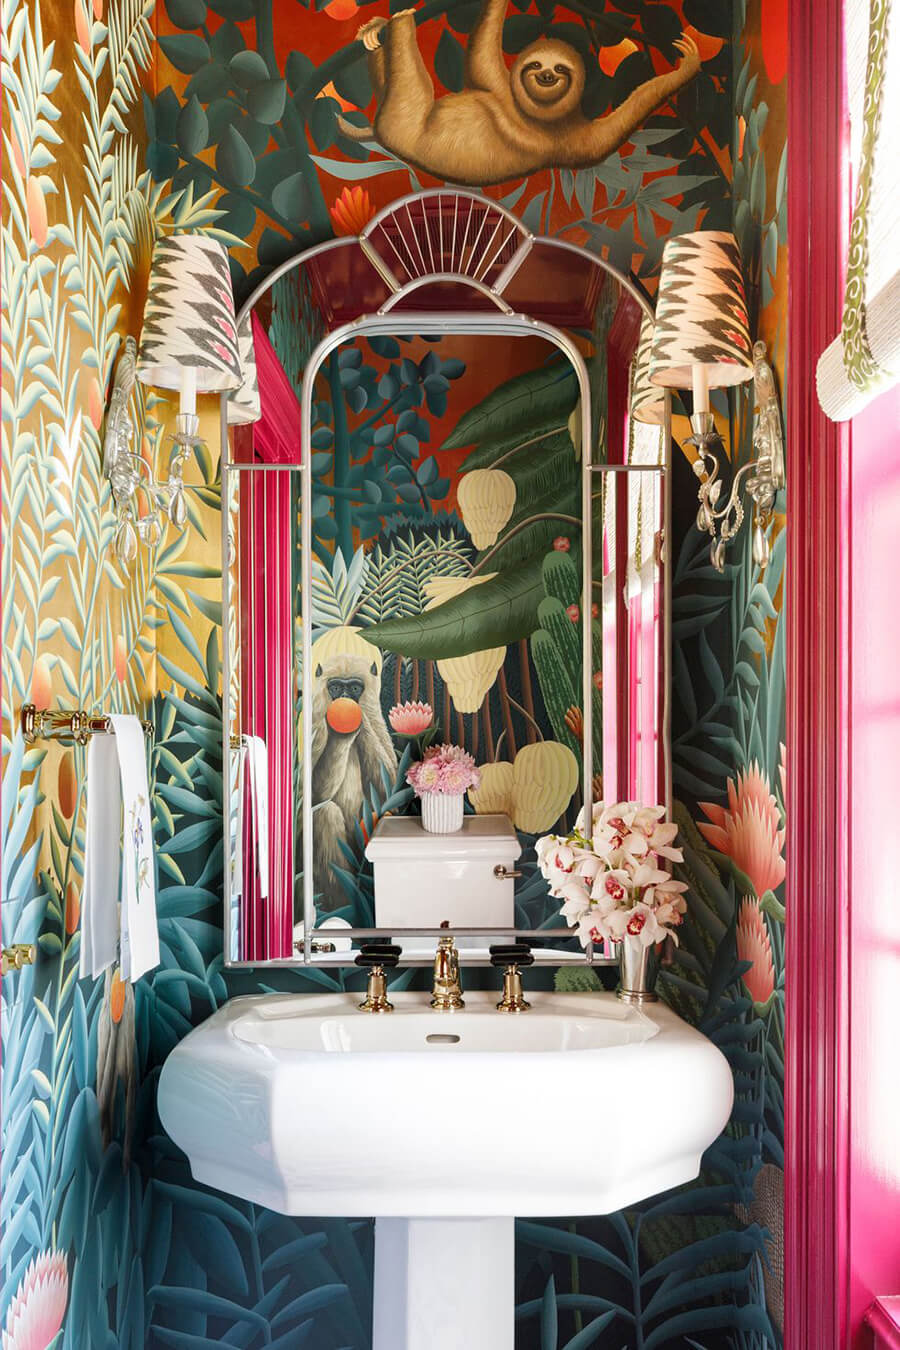 Baño con papel mural con ilustraciones de plantas y animales tropicales. El lavamanos es blanco con detalles dorados y también hay un espejo con marco estilo art deco.